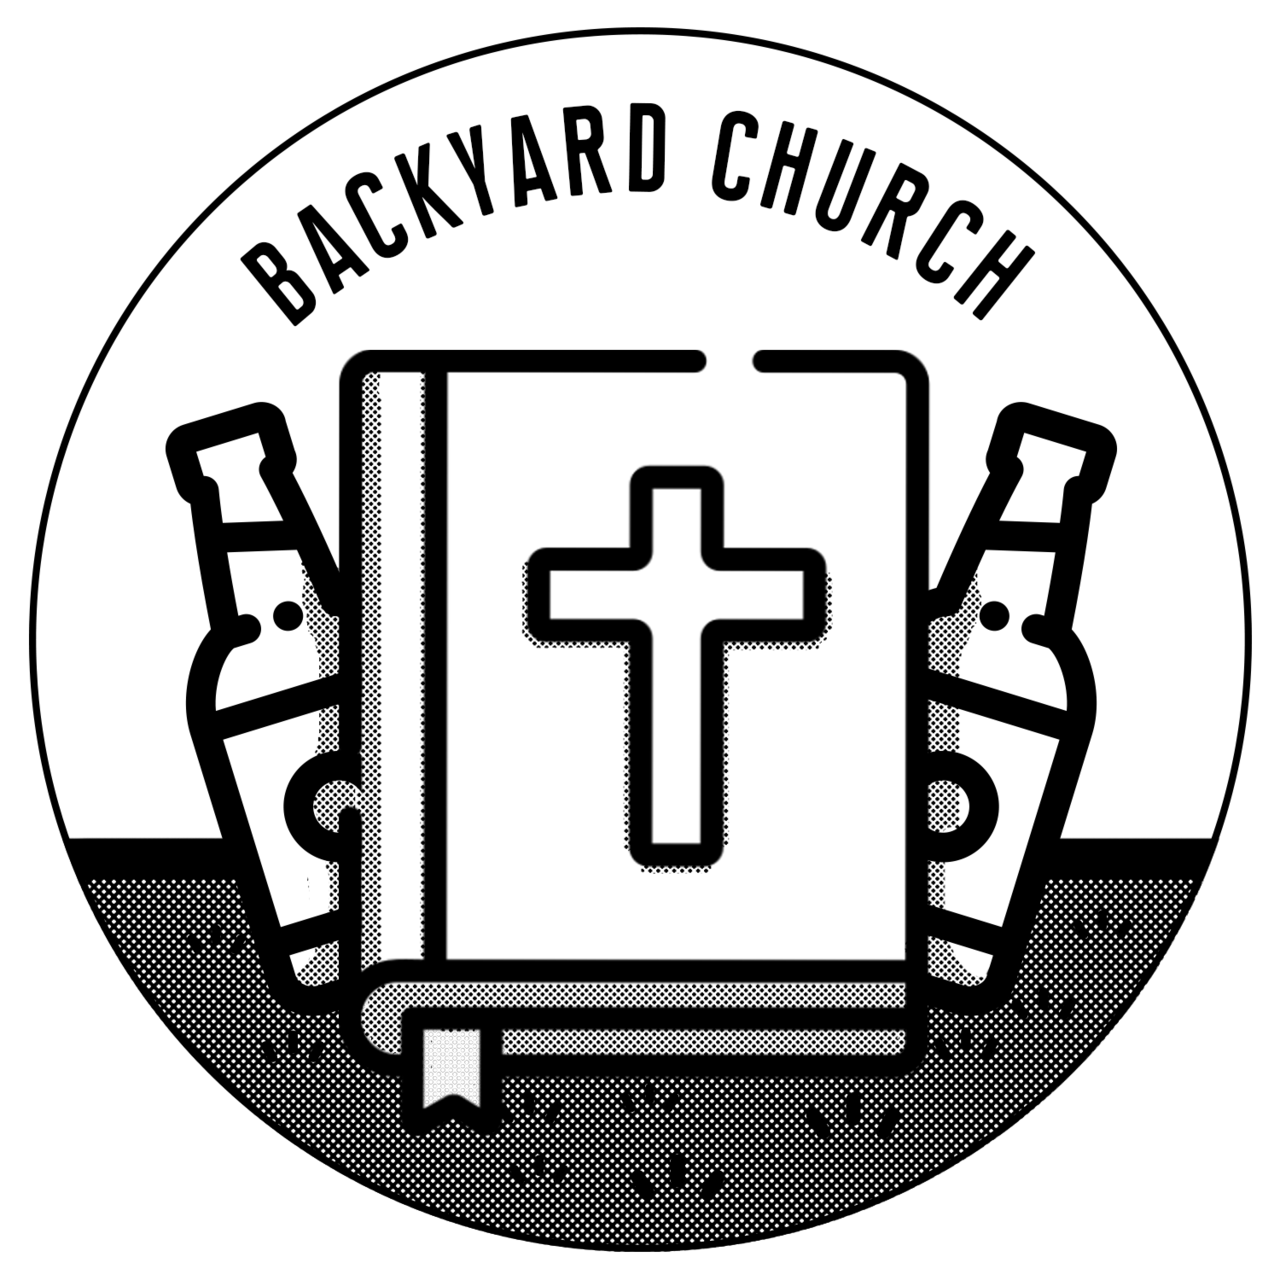 The Backyard Church